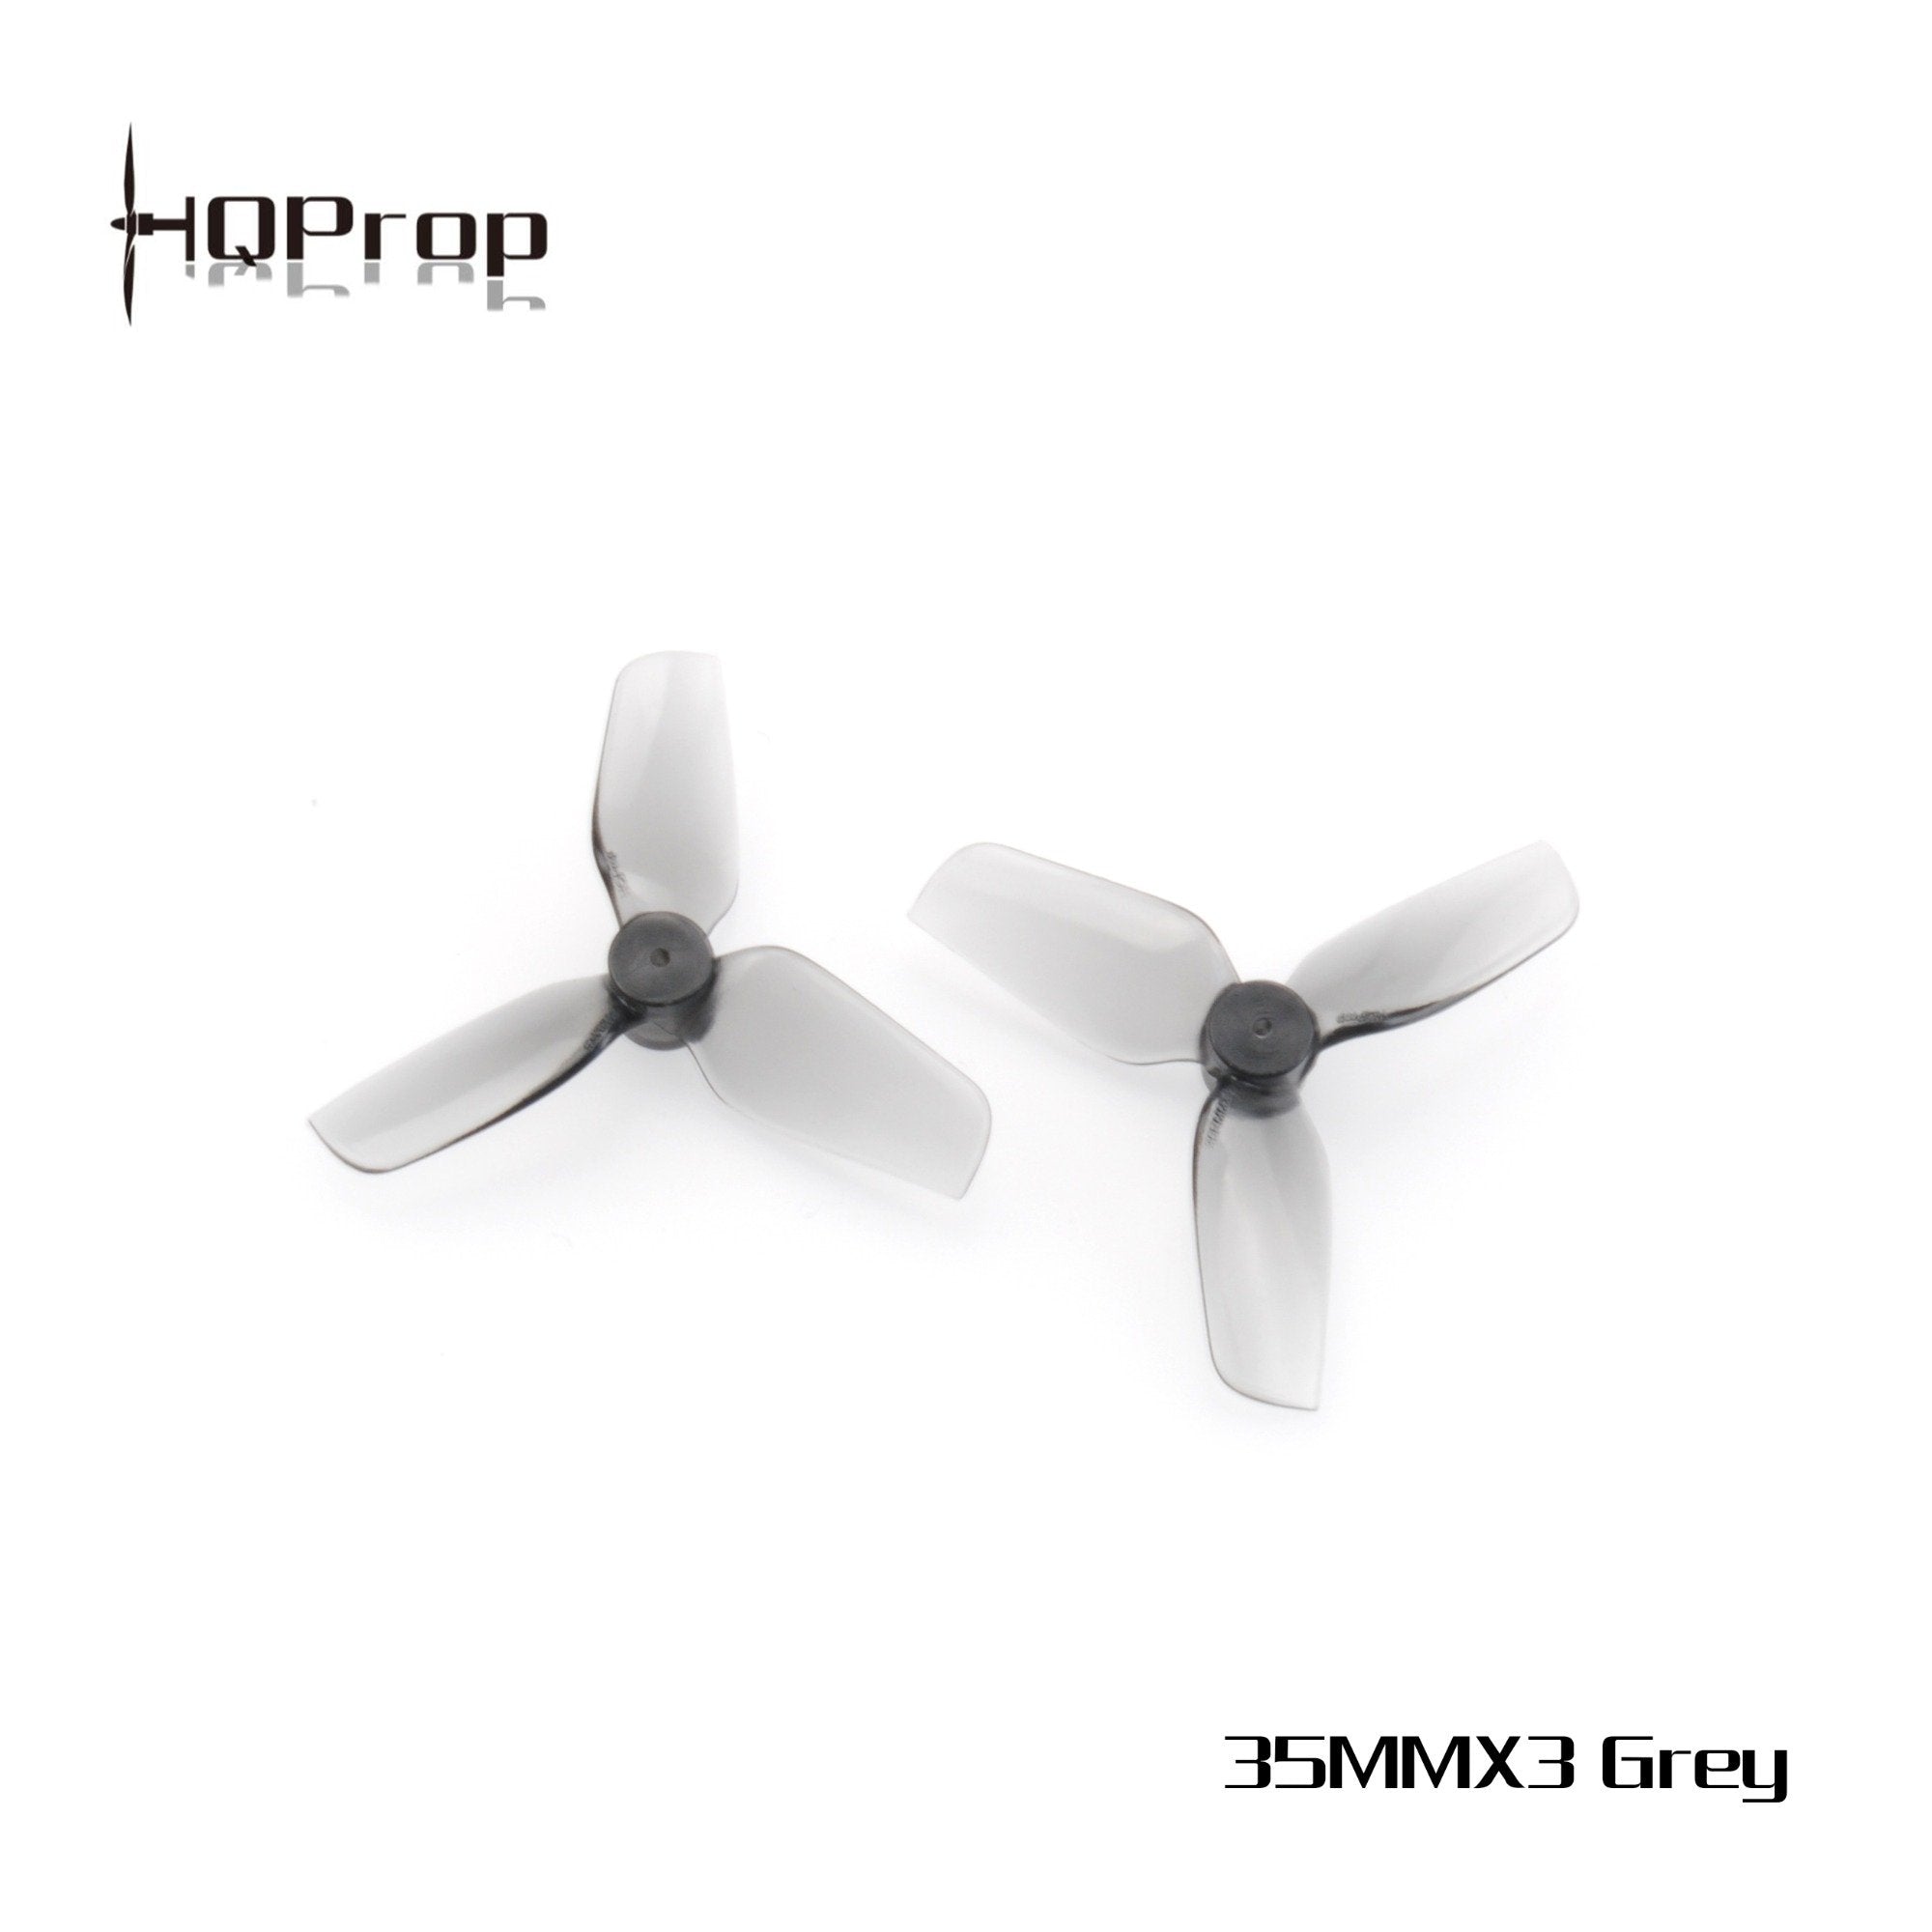 HQProp Micro Whoop Prop 35MMX3 Propellers 4 - HQProp - Drone Authority